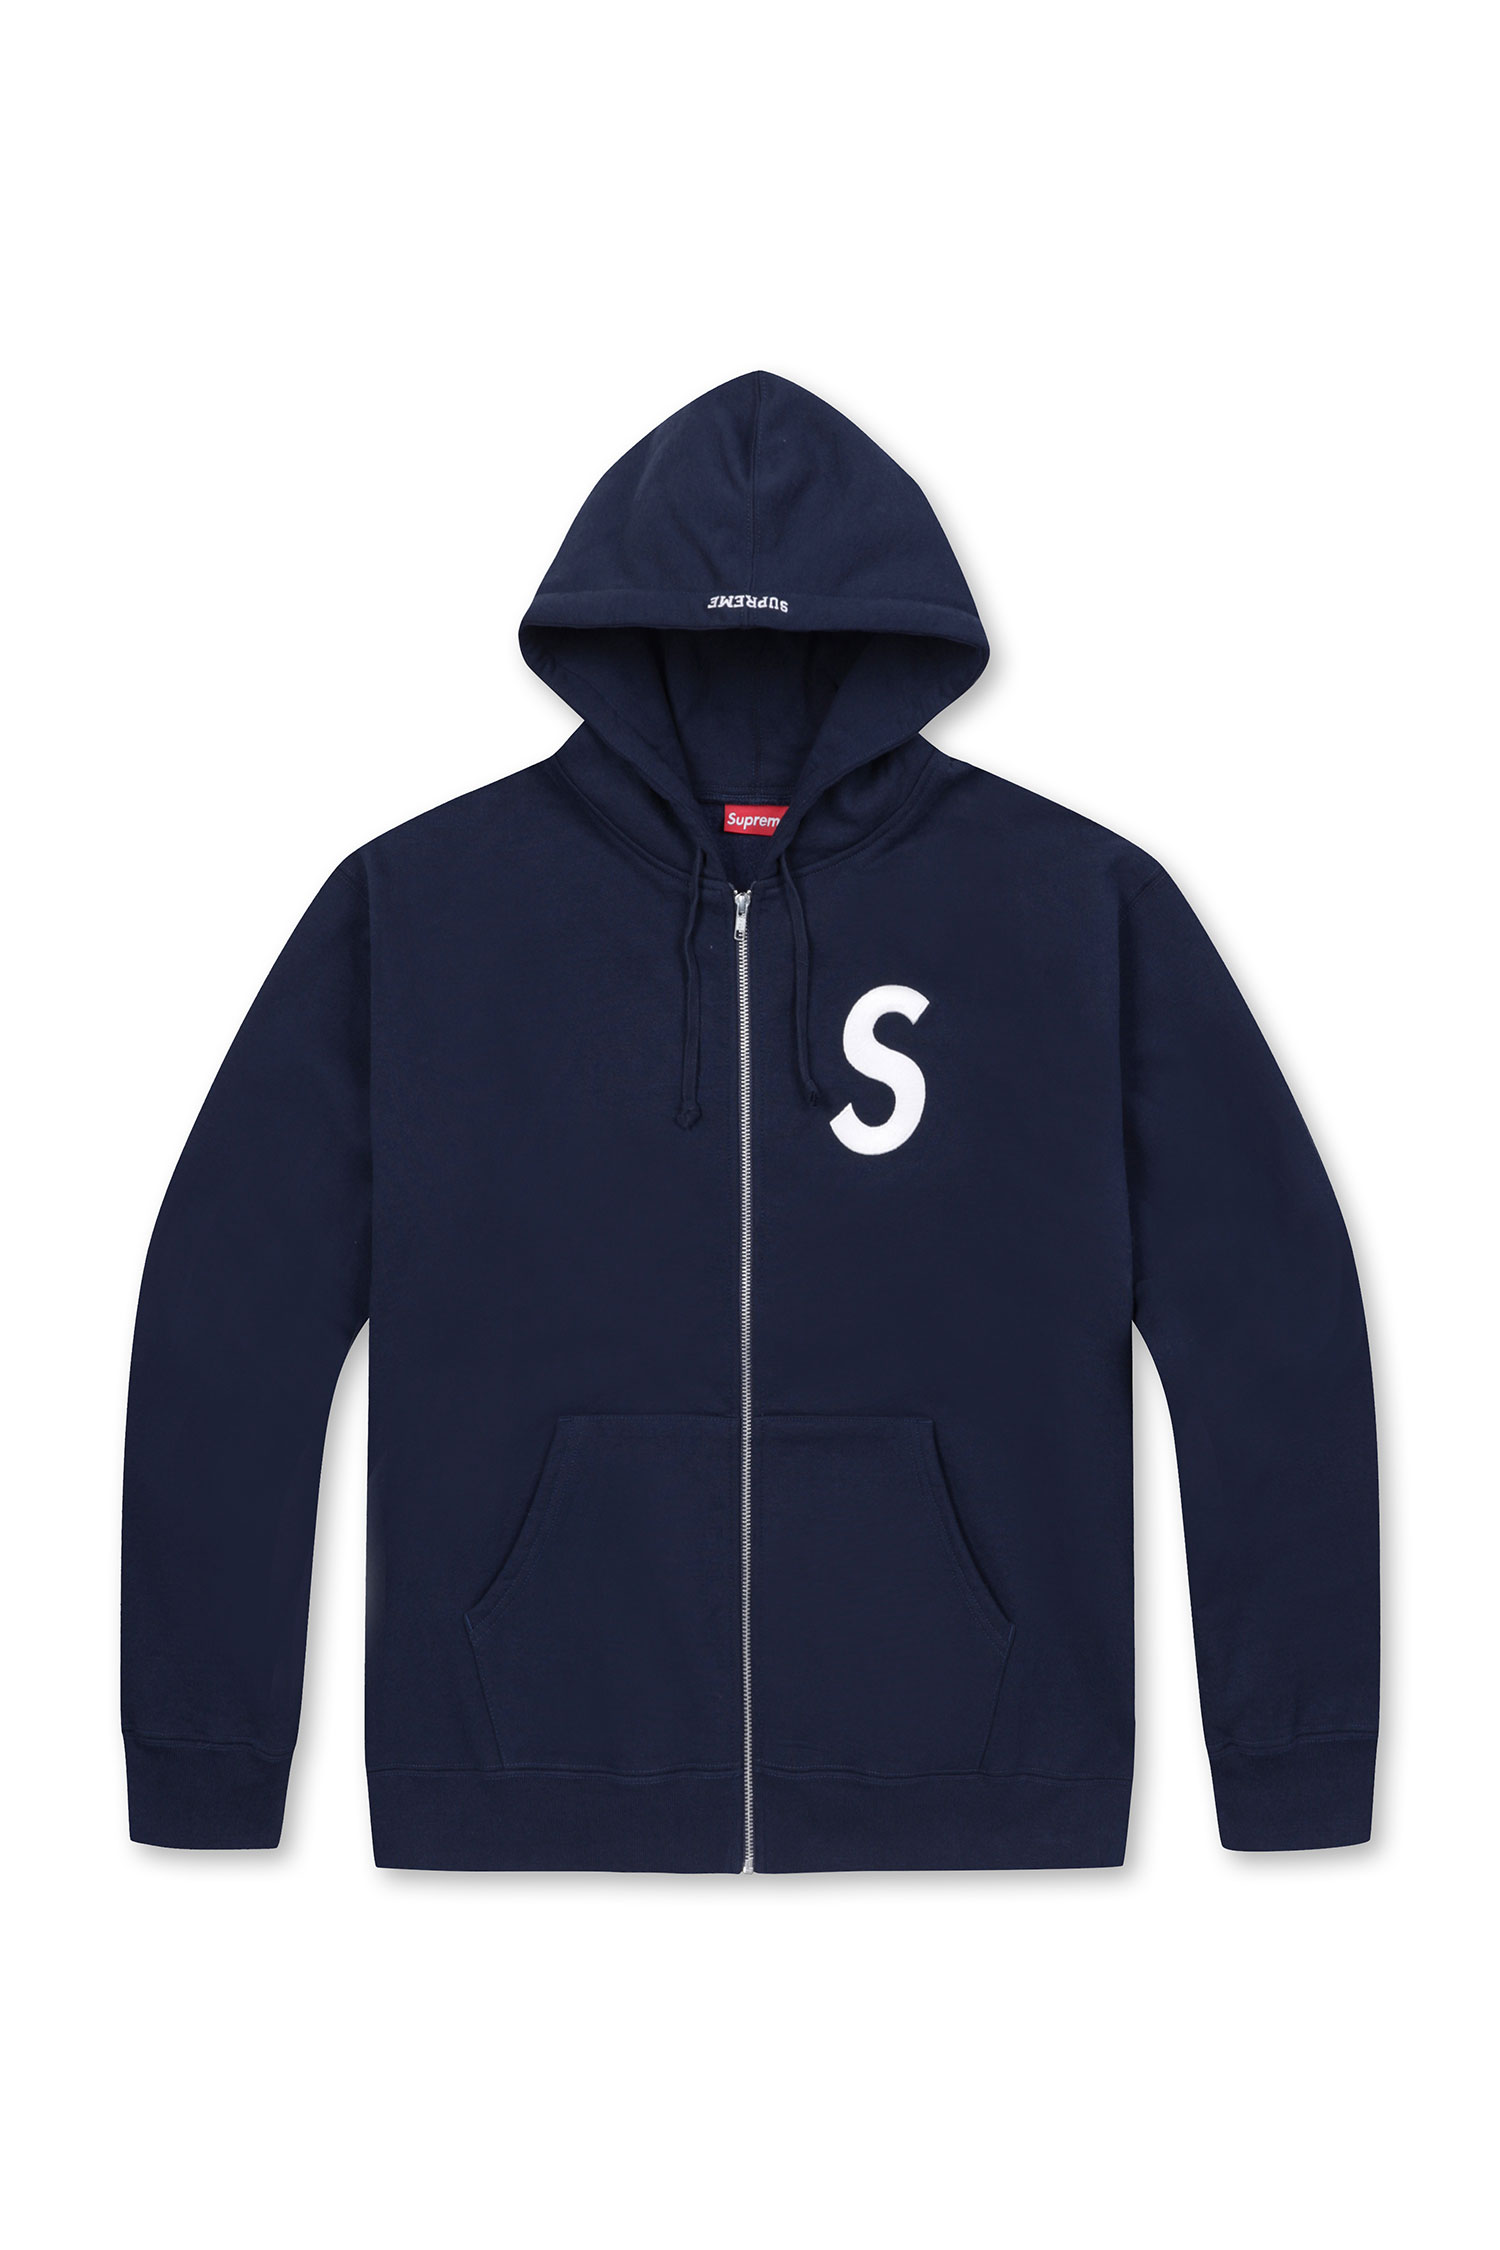 SUPREME] 23FW S Logo Zip Up Hooded Sweatshirt S 로고 후드집업 